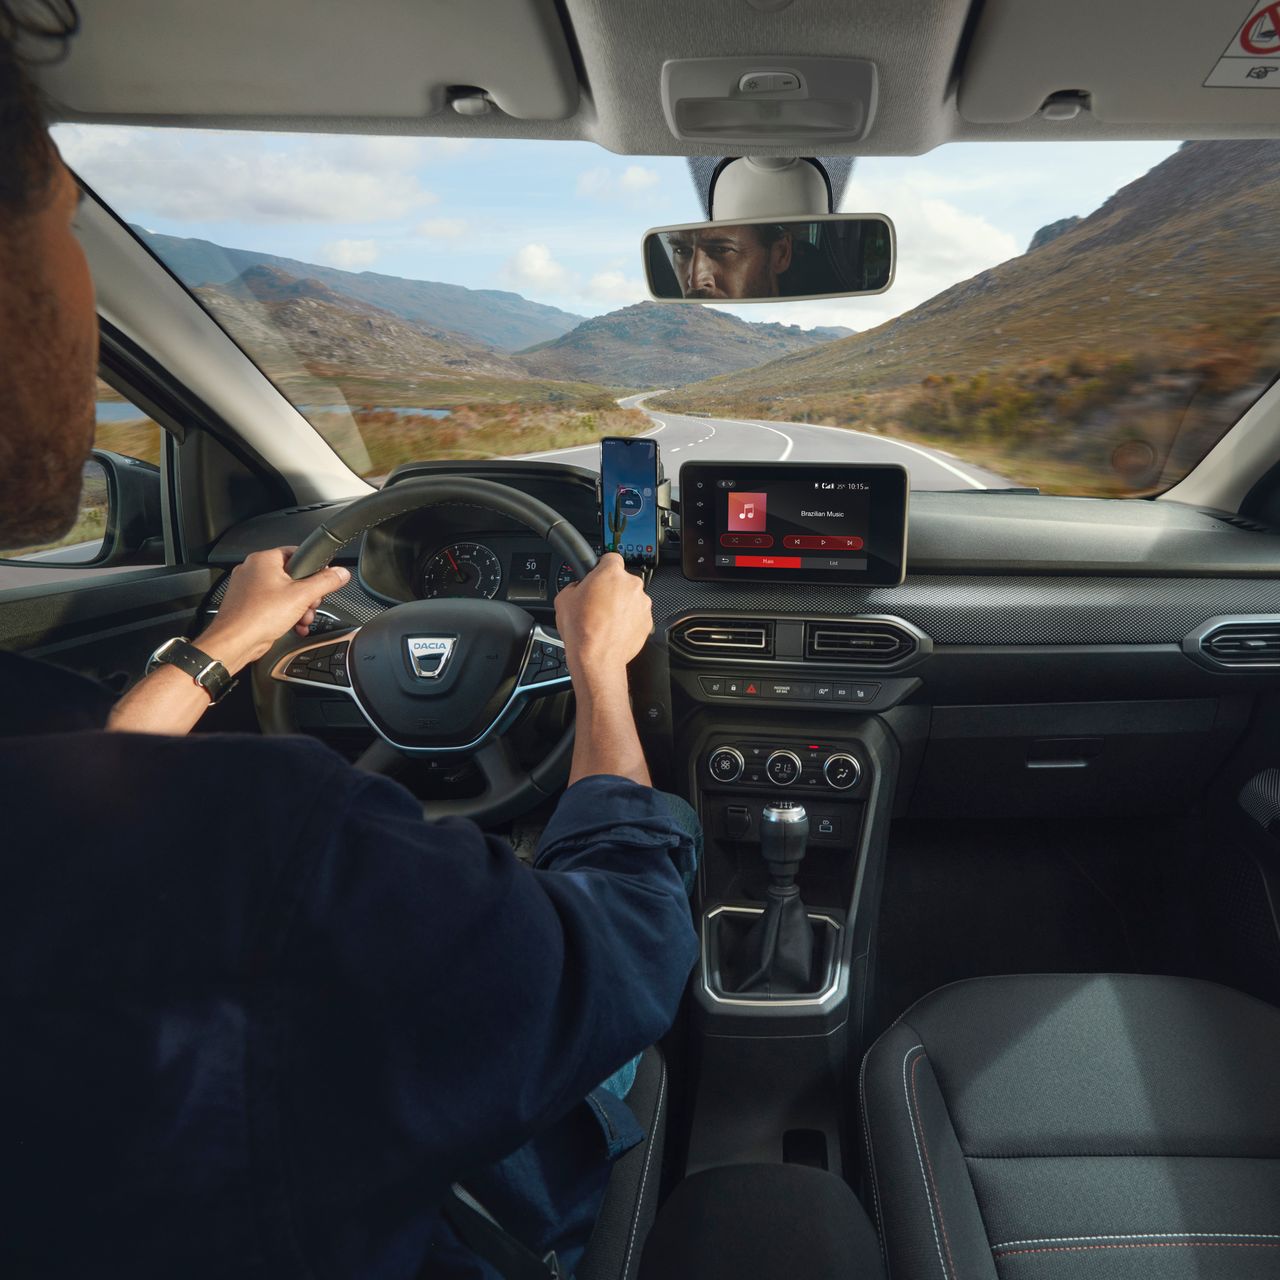 System multimedialny Joggera zapewnia m.in. łączność z interfejsami Apple CarPlay i Android Auto, co pozwala duplikować zawartość smartfona na ekranie w samochodzie.